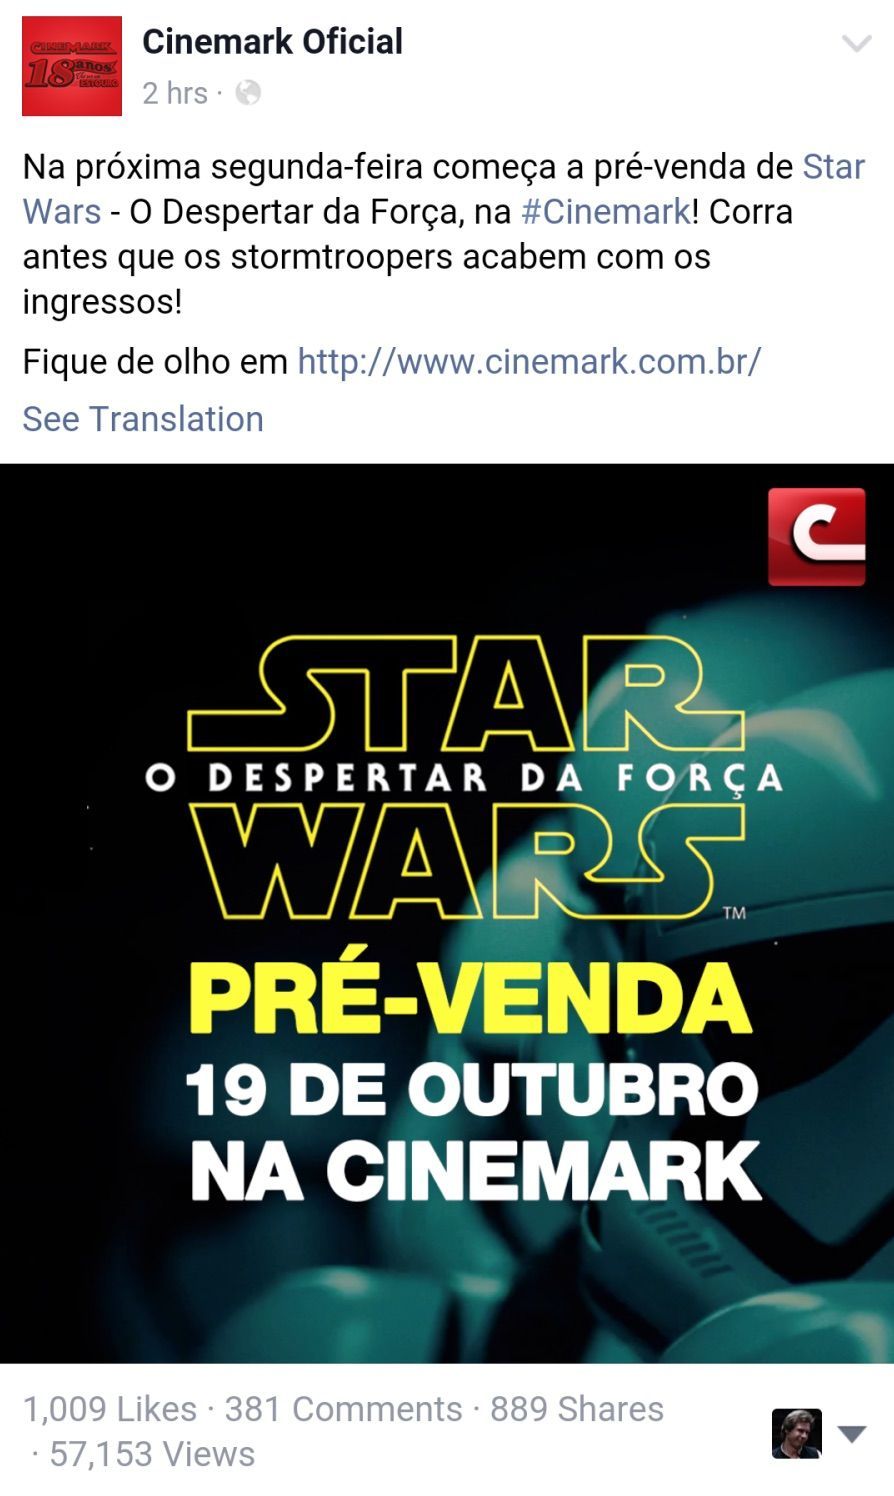 Cinemark Star Wars 7 Ticket Sale